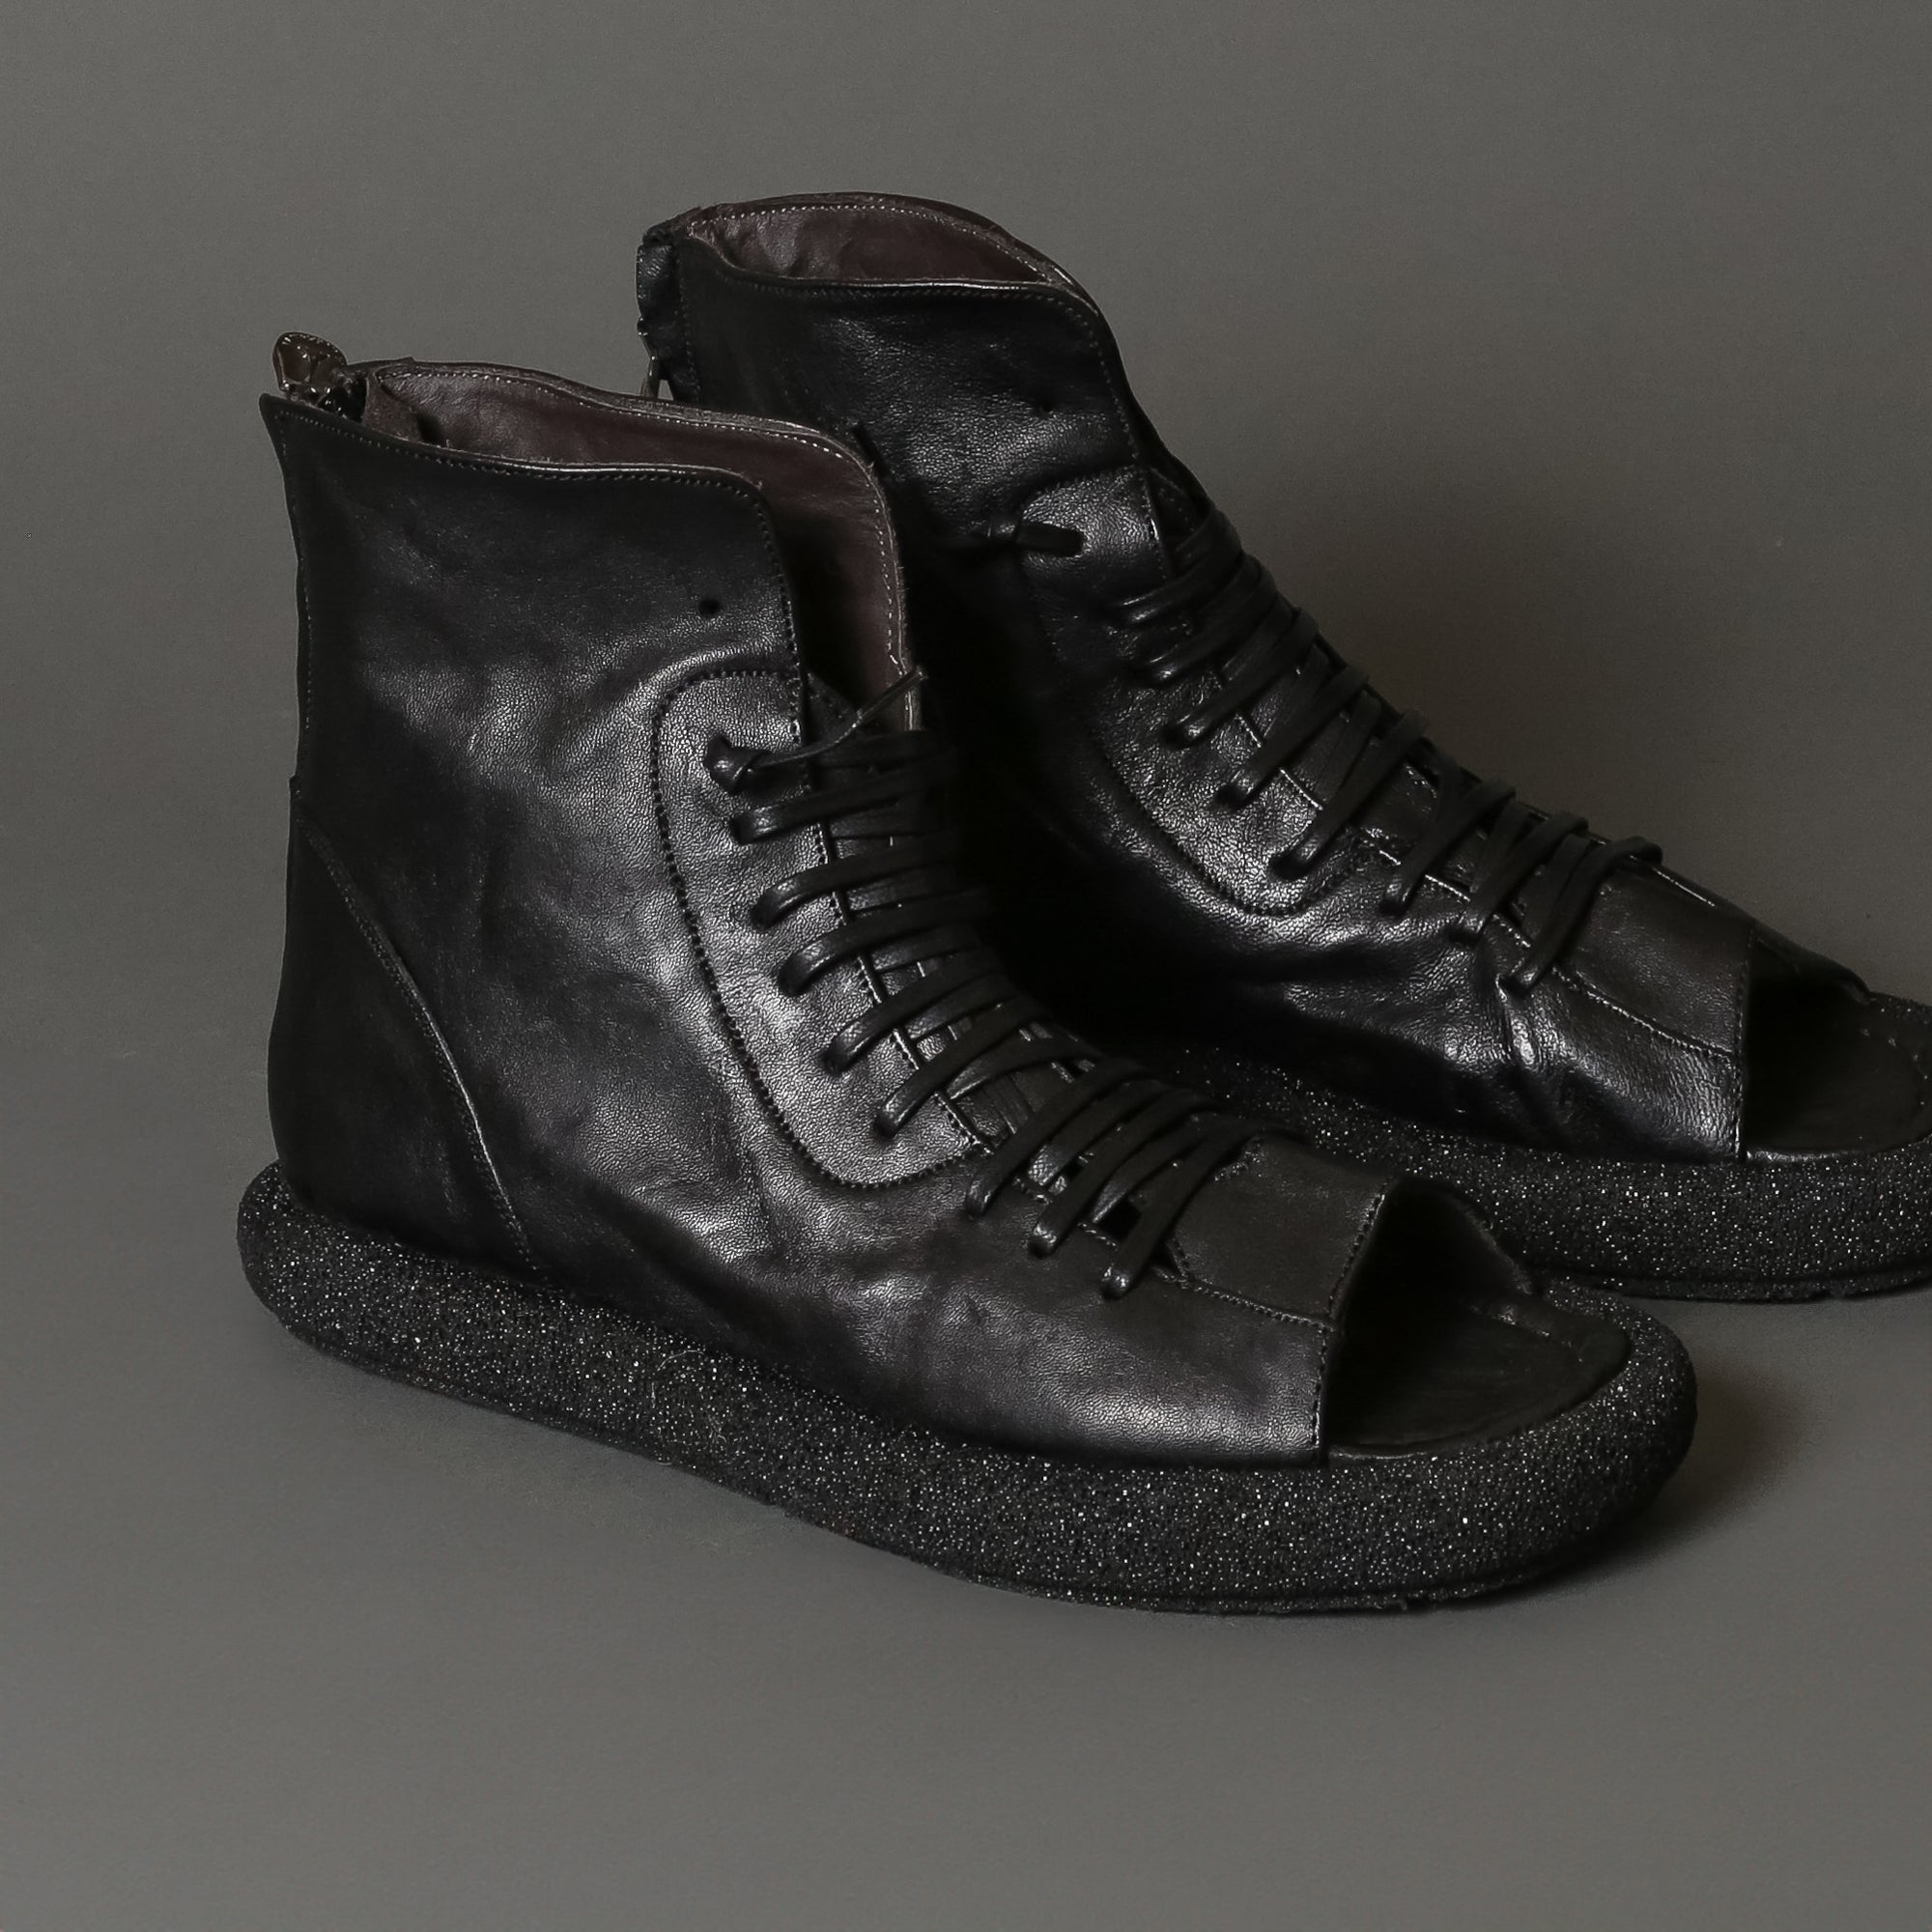 Hama 1110 Black - 124 Shoes